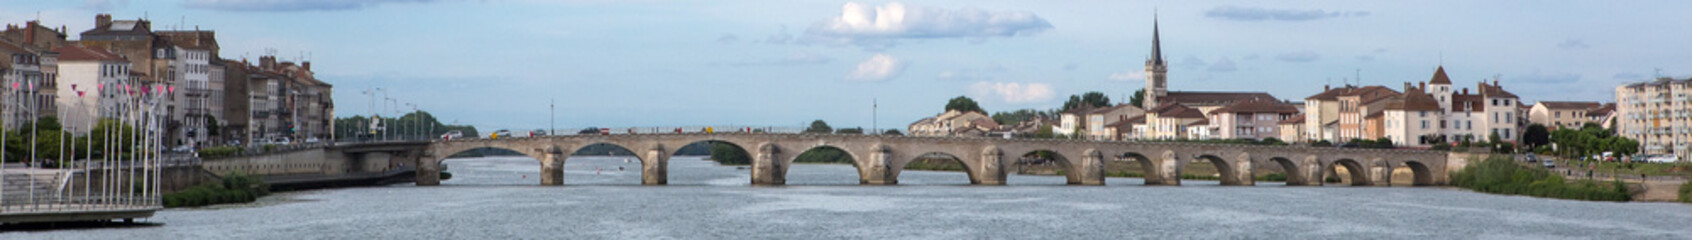 Macon and Pont Saint-Laurent, France